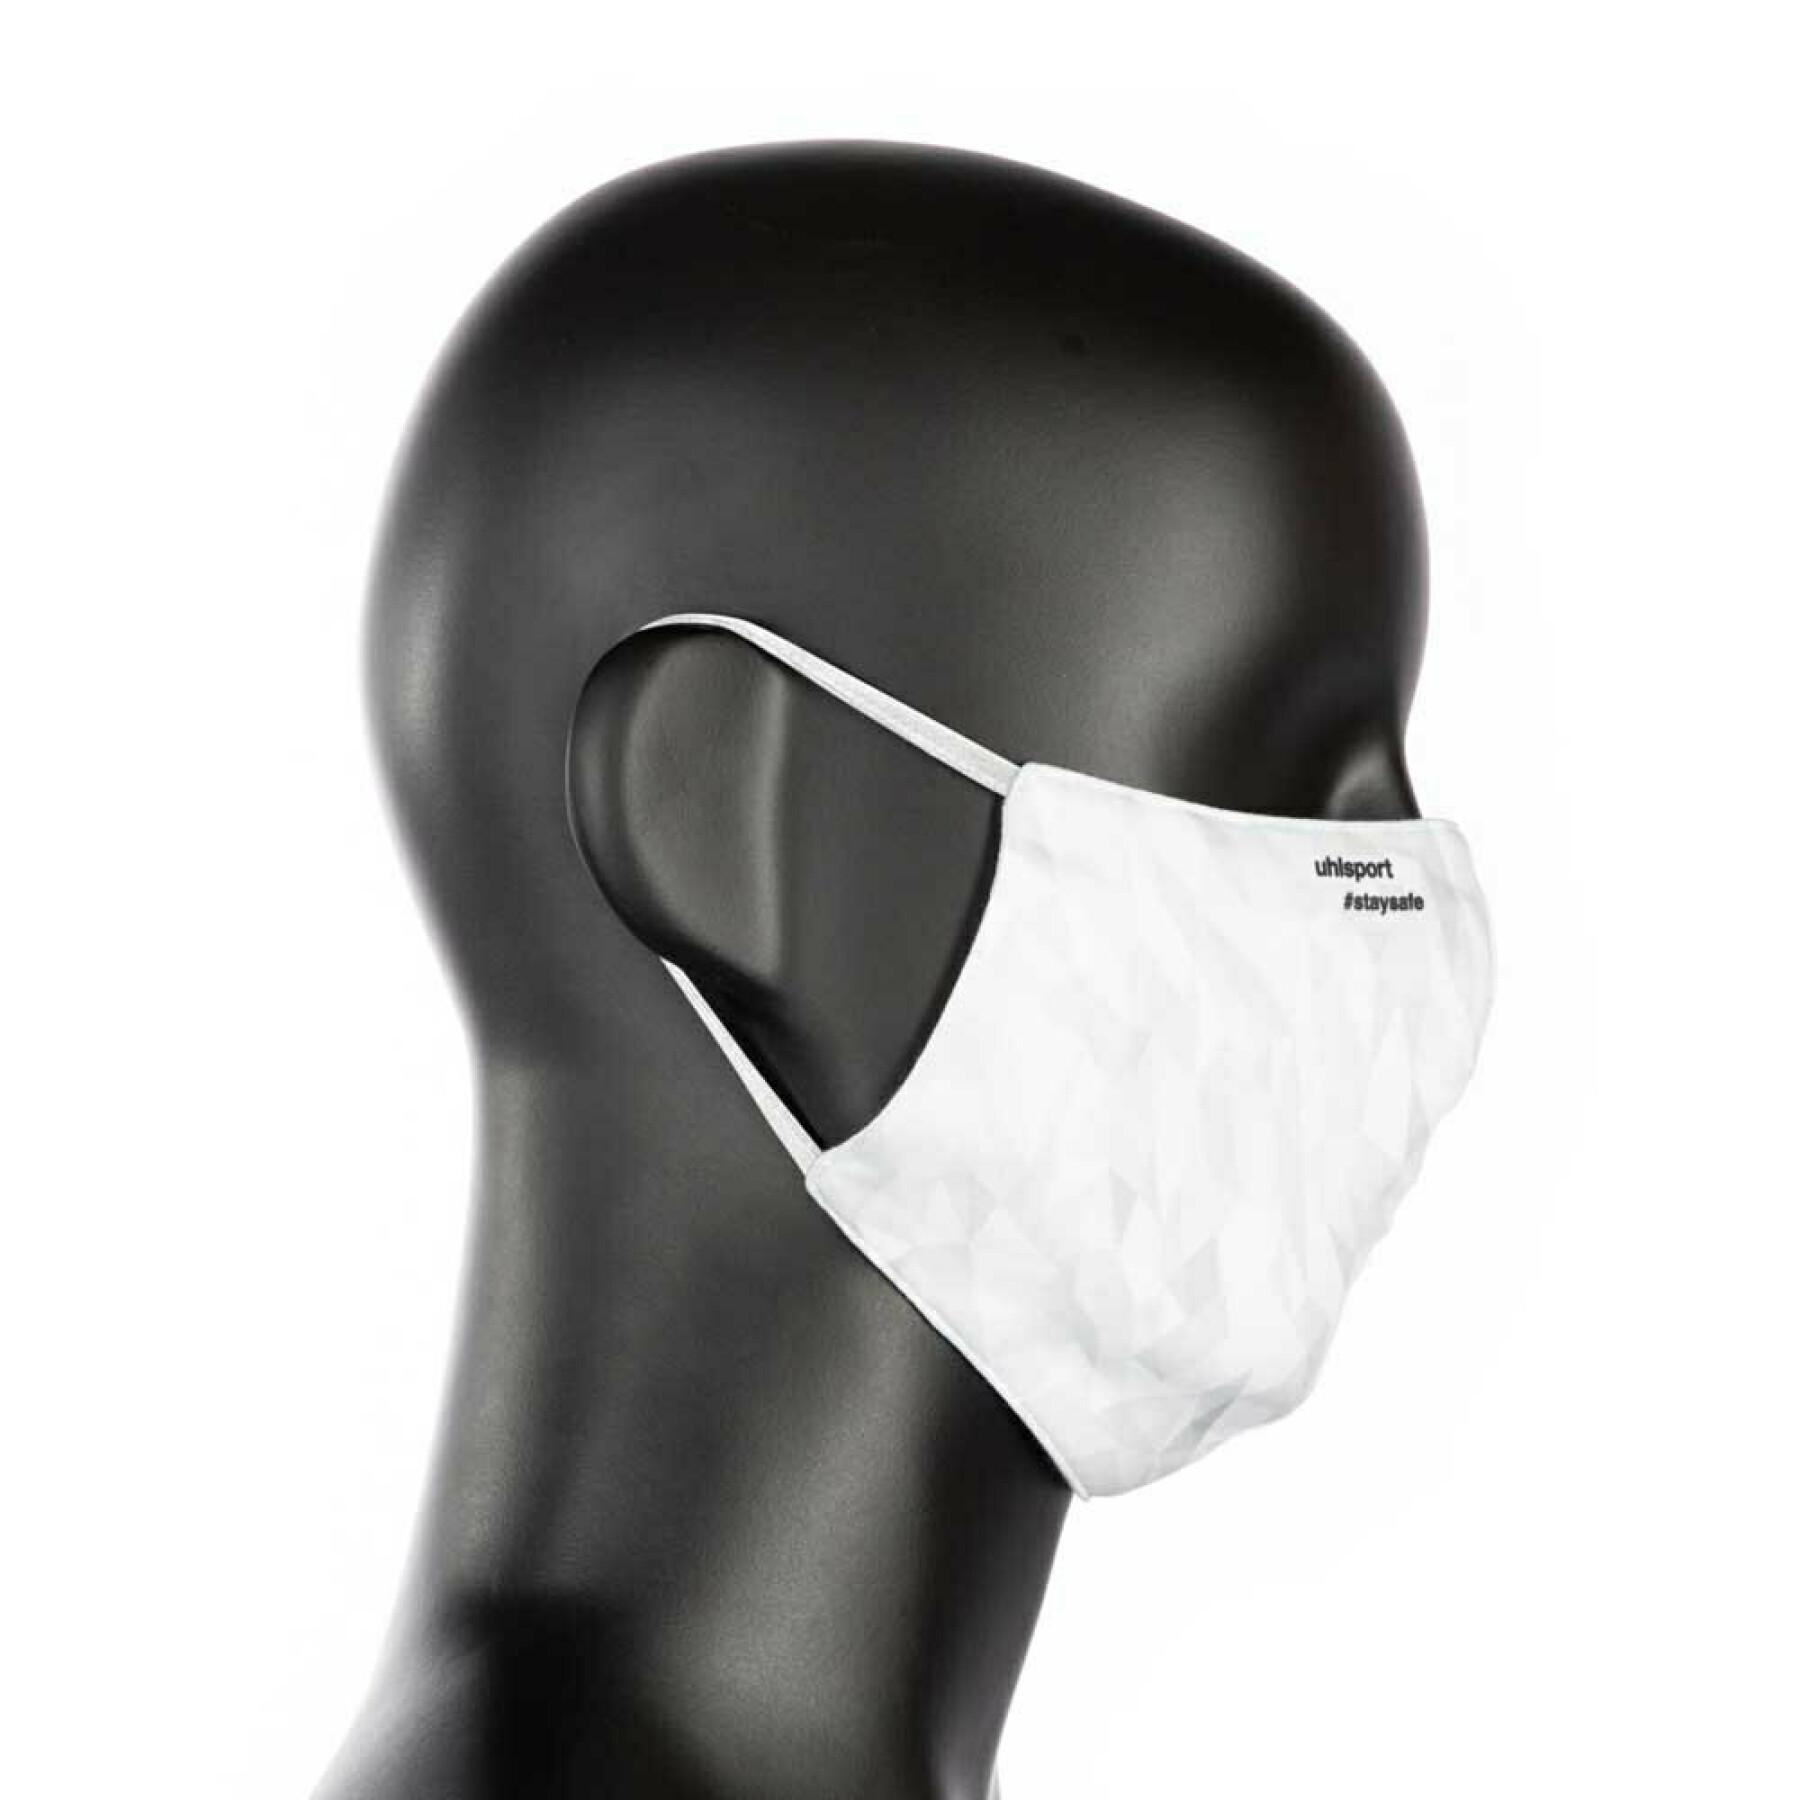 Protective mask Uhlsport Standard 